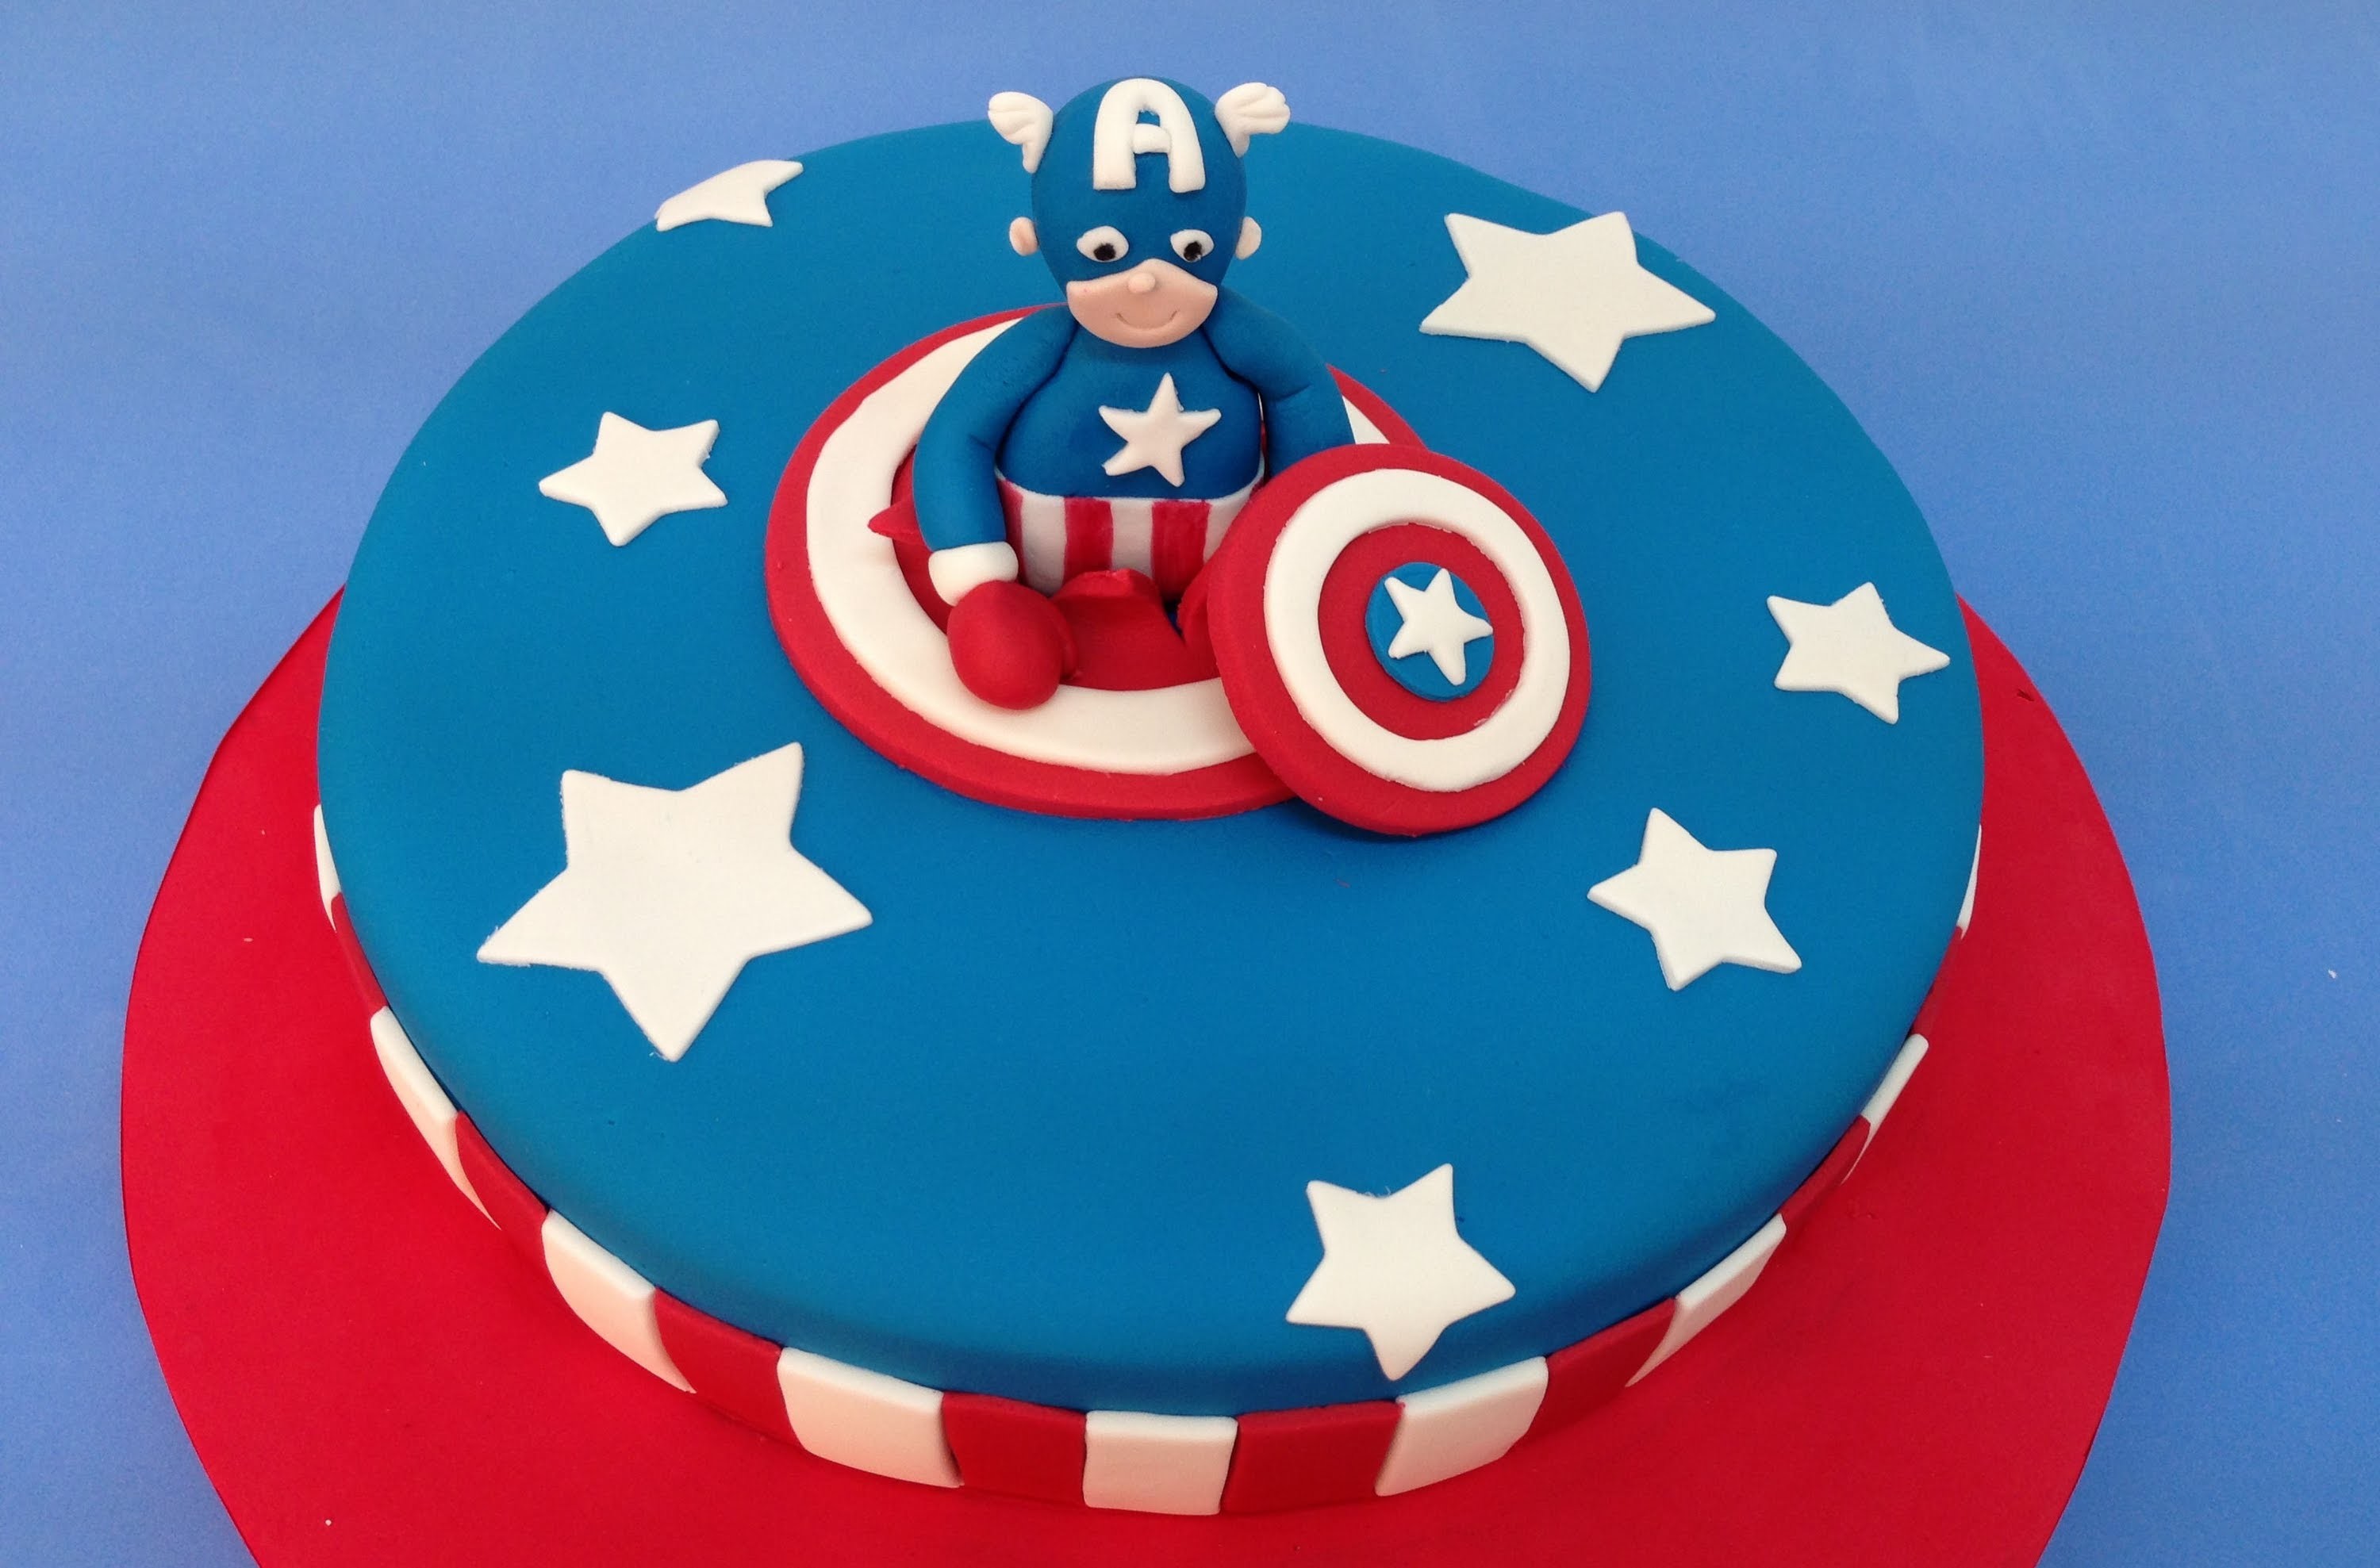 Tarta de fondant de Superhéroe: Capitán America.Captain America cake